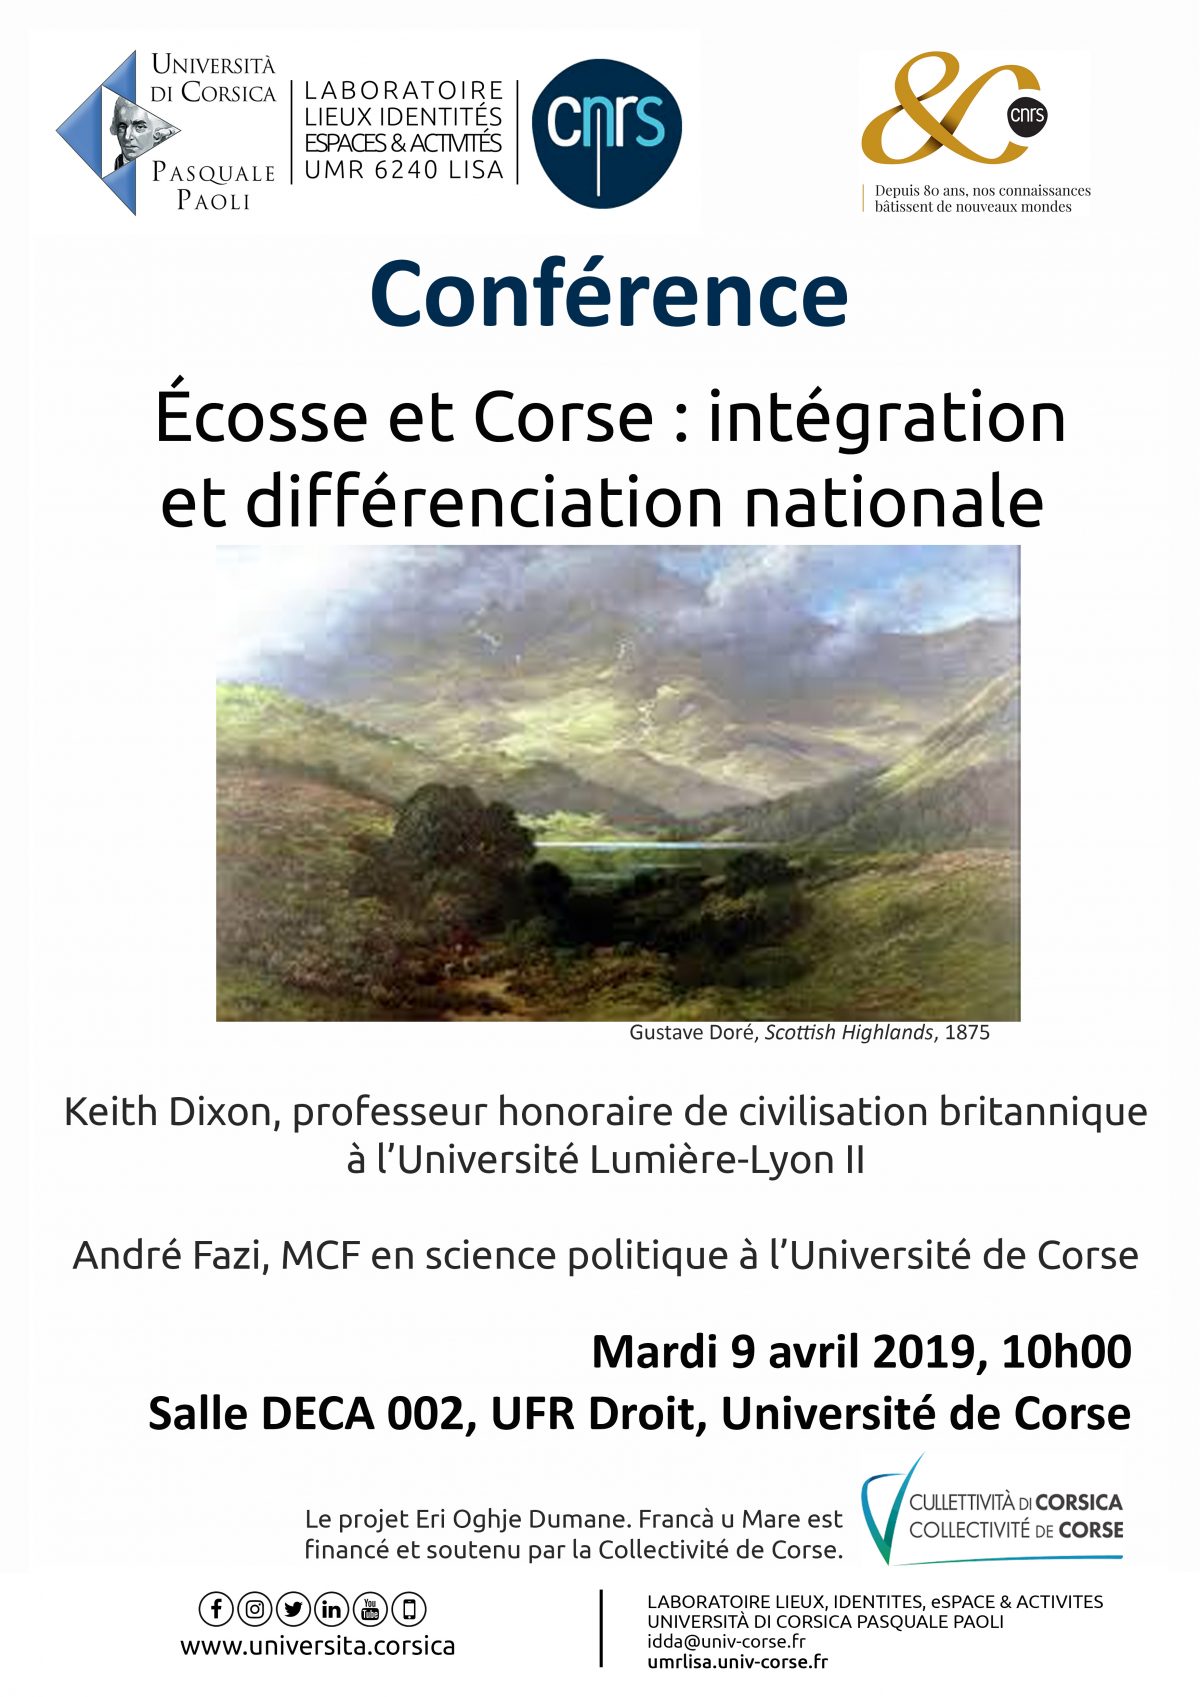 Conférence « Ecosse et Corse : intégration et différenciation nationale »